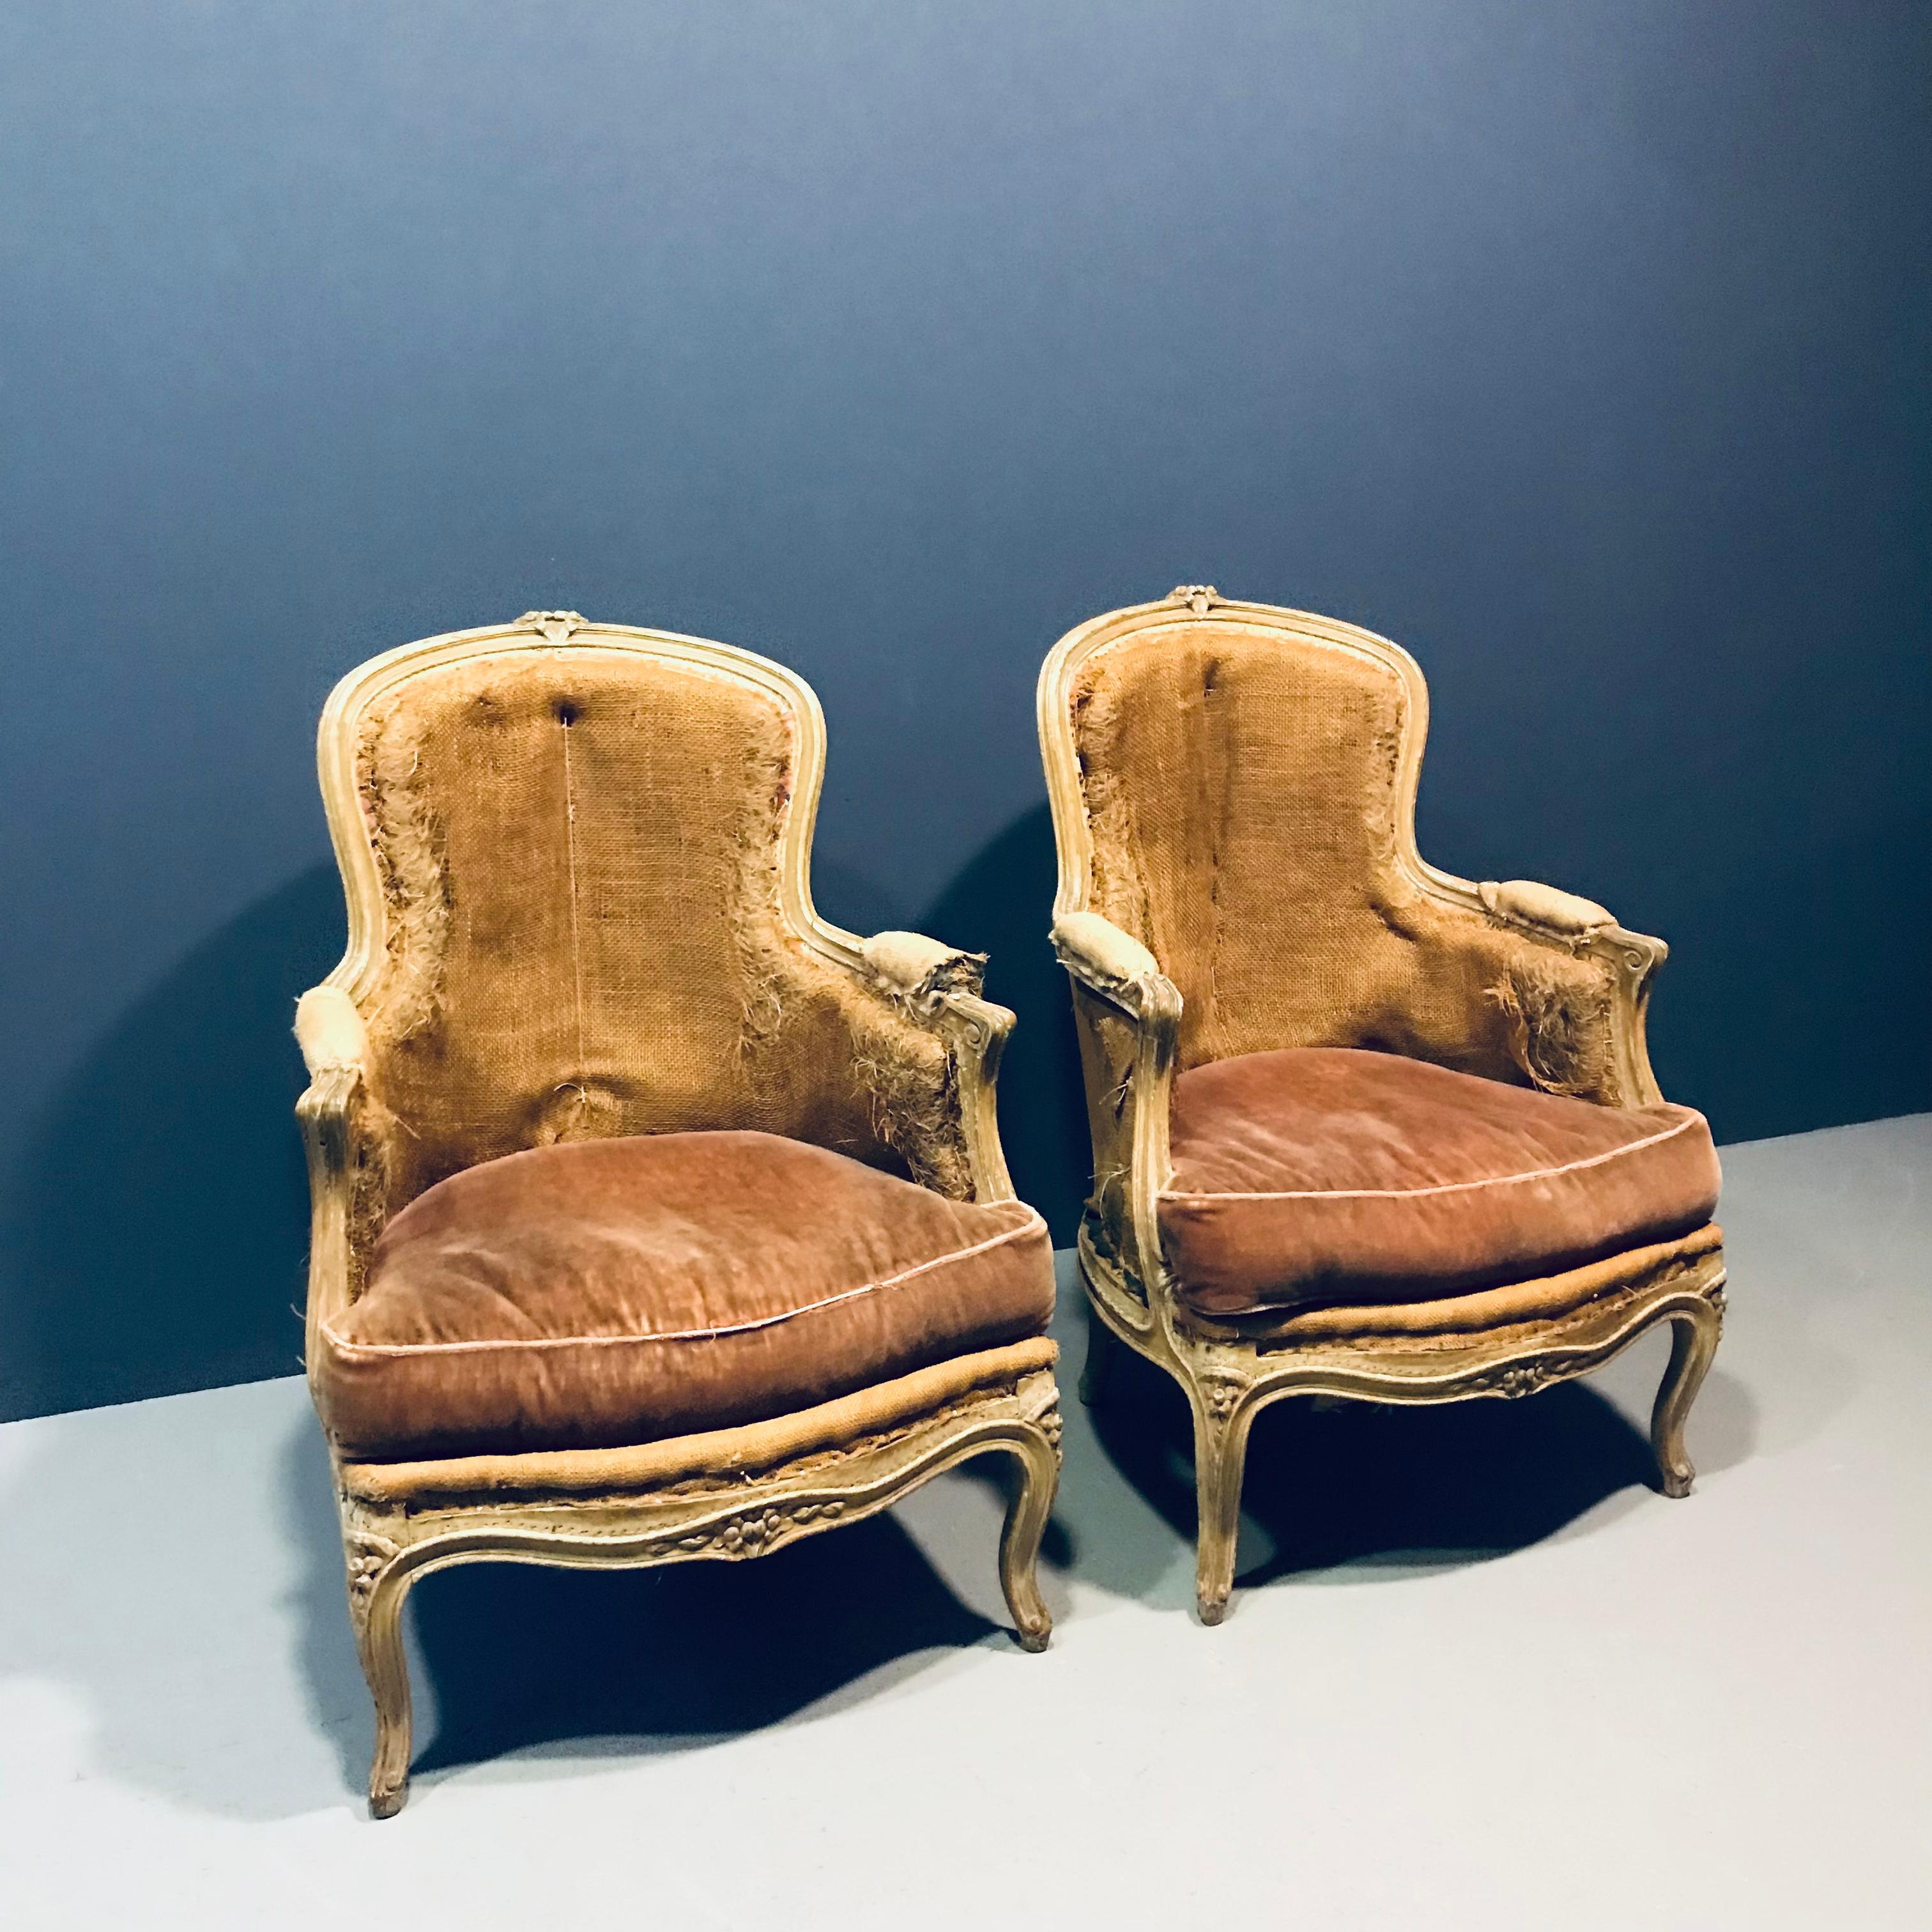 Fauteuils Louis XV Bergère du 19ème siècle dans leur patine d'origine, encore très confortables, parfaits pour la déco ou votre prochain projet ! Le cadre en bois des chaises est joliment sculpté. Les pieds cabriole se terminent par des volutes